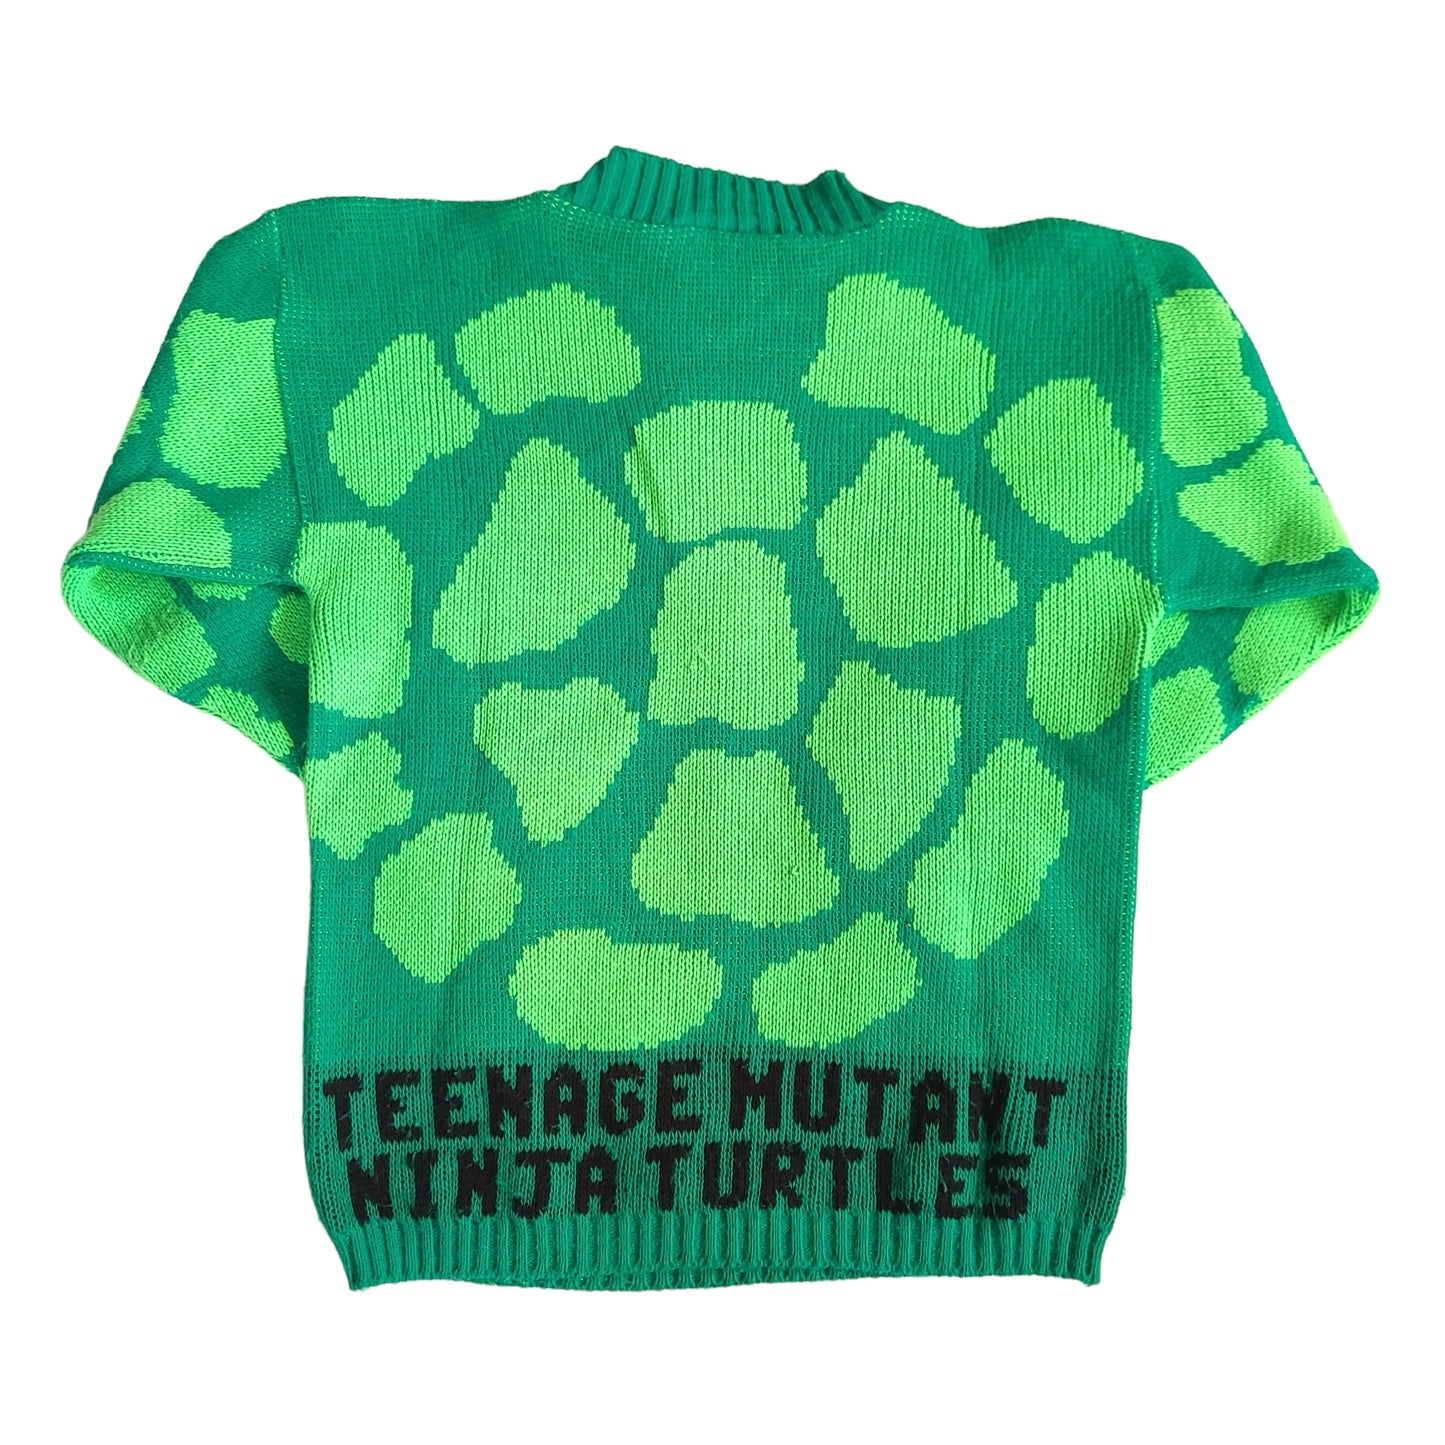 Vintage Teenage Mutant Ninja Turles Youth Knit Sweater